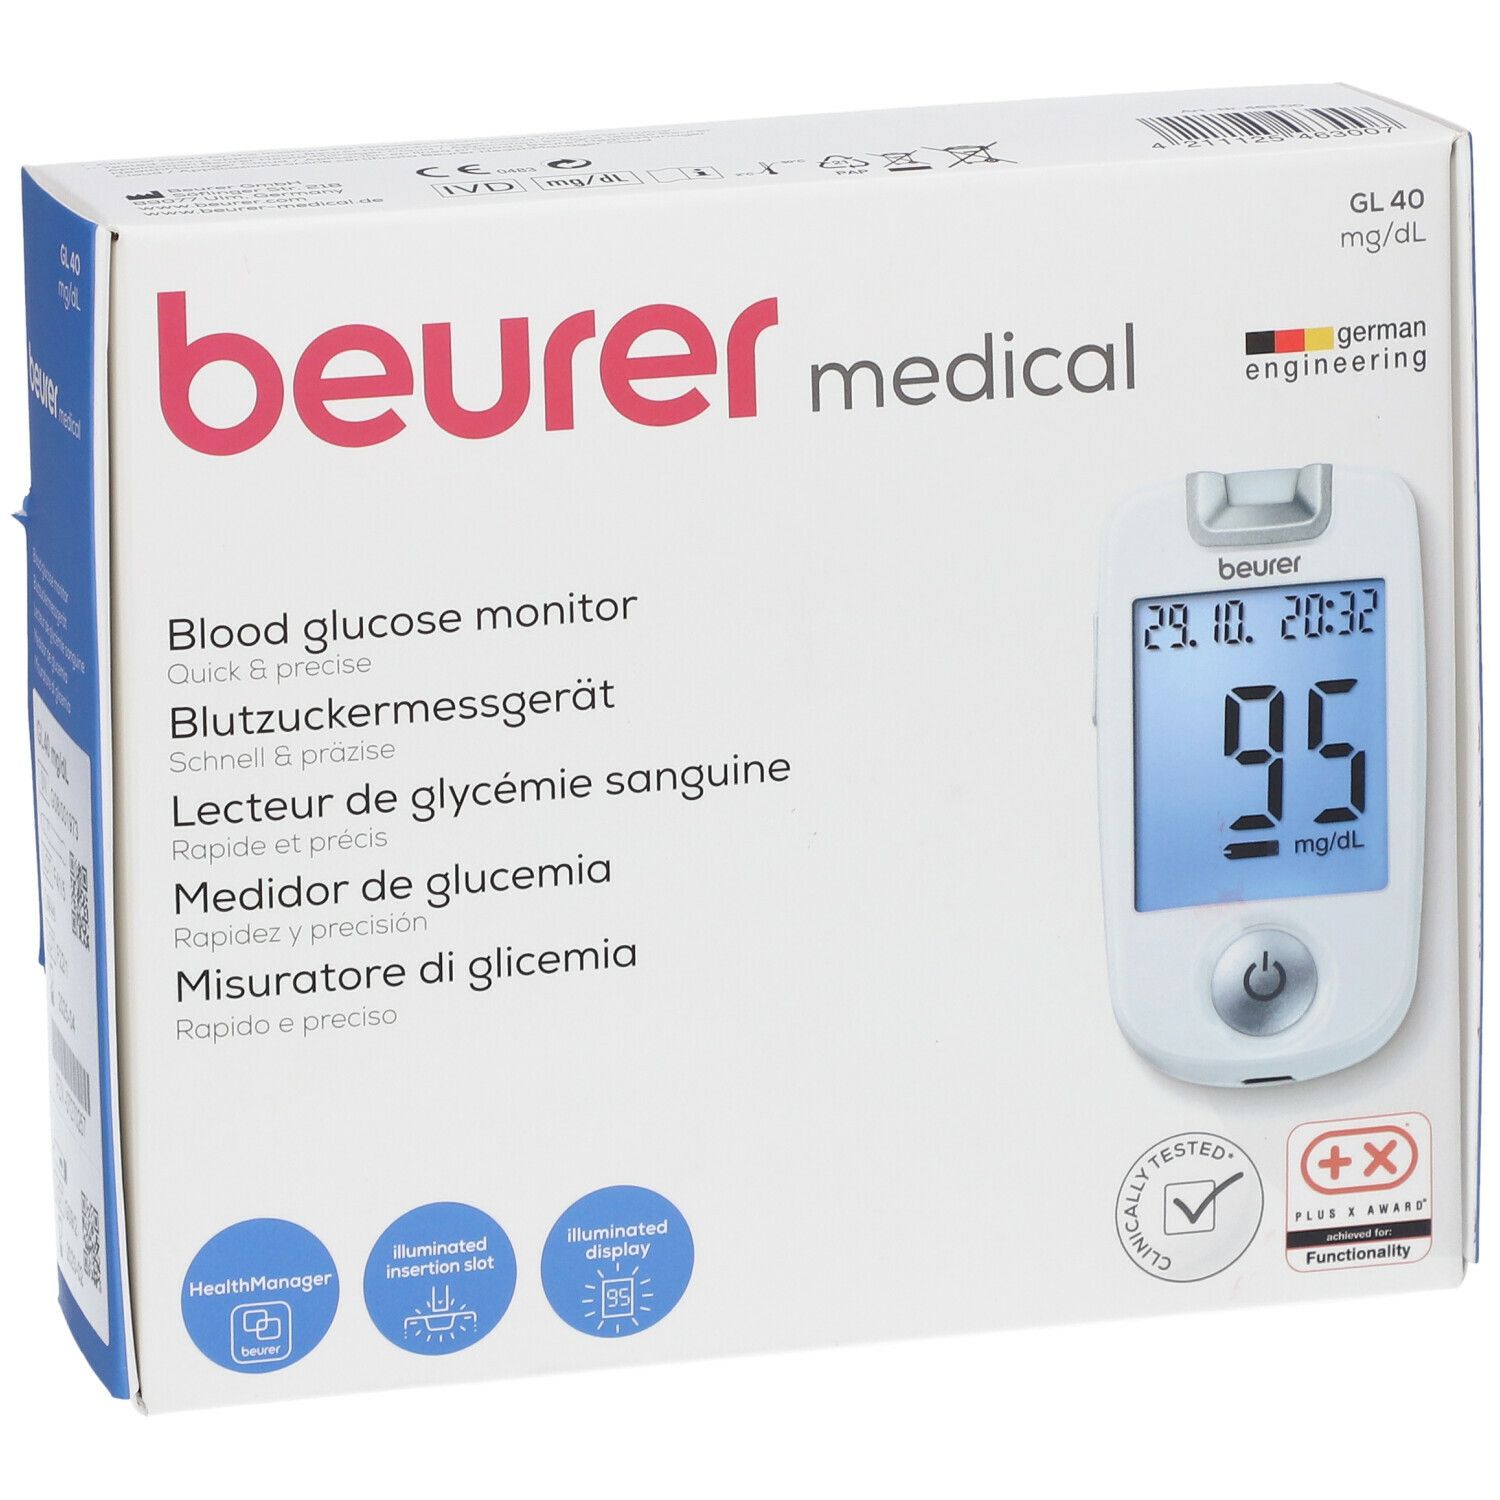 beurer Blutzucker Messgerät GL40 mg/dl